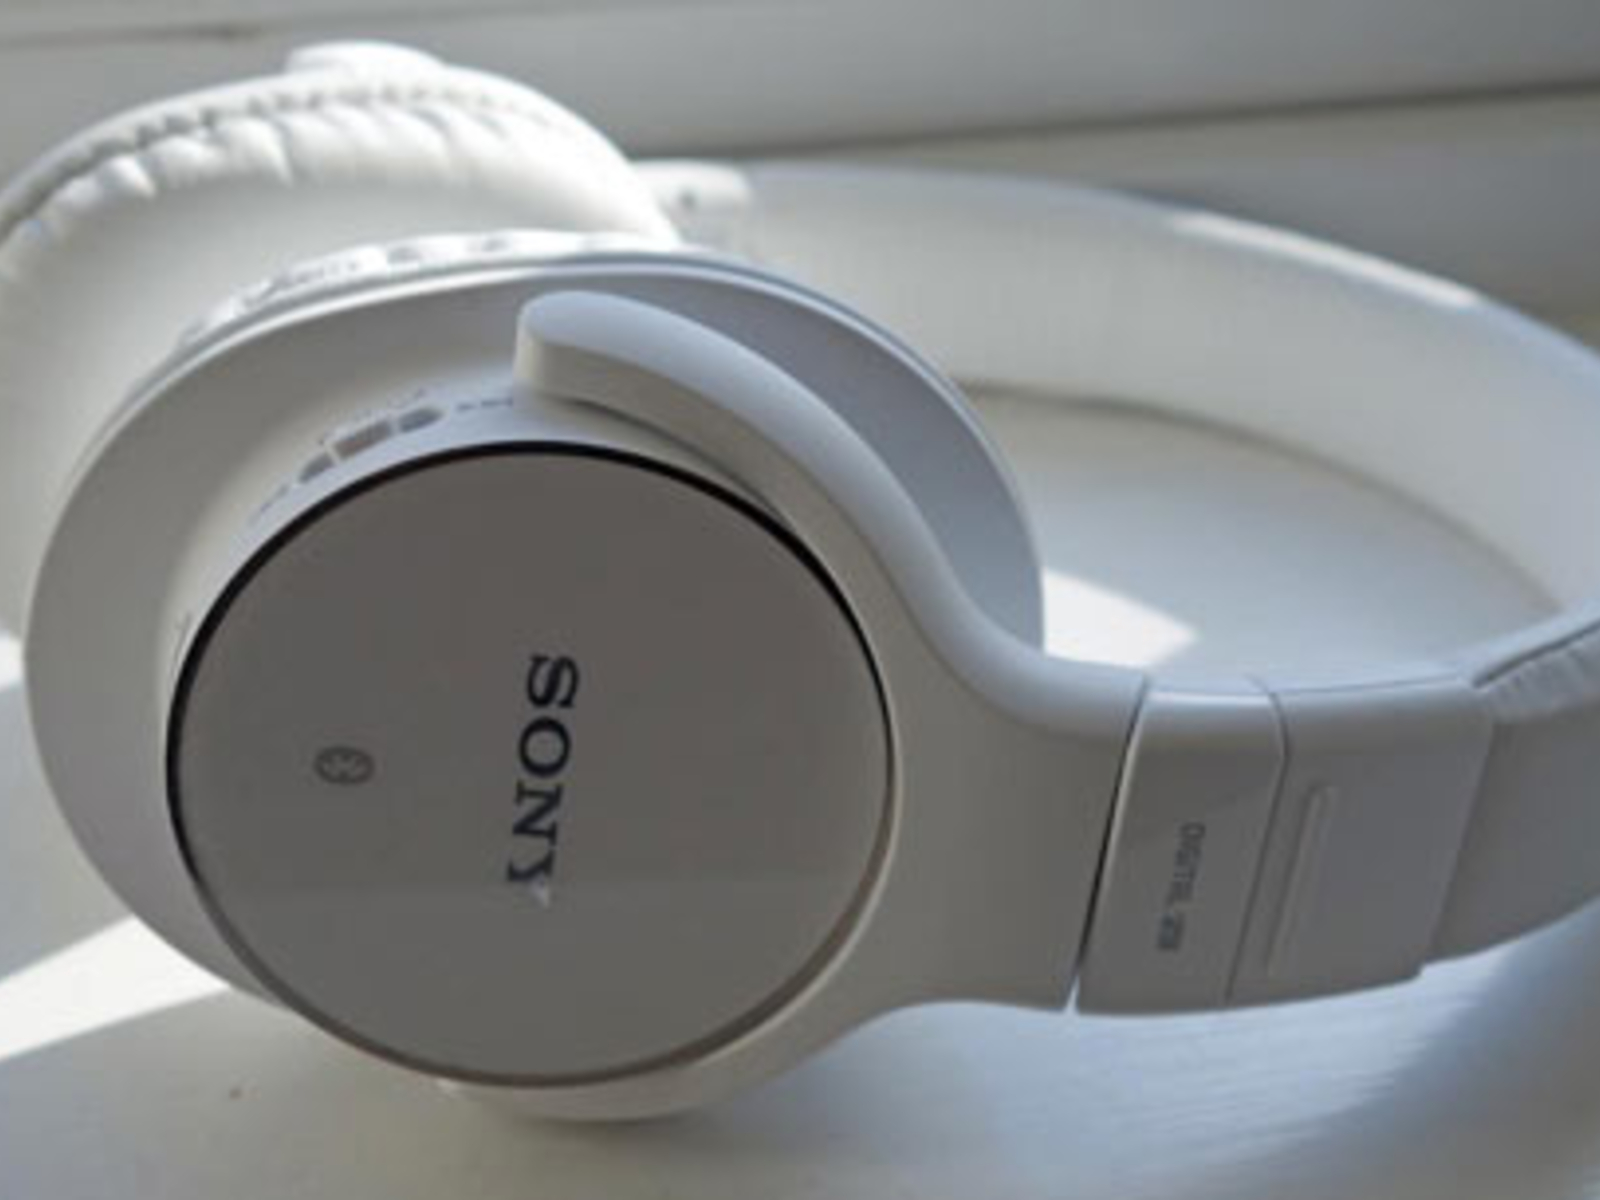 Sony-Kopfhörer Test im neue Vier